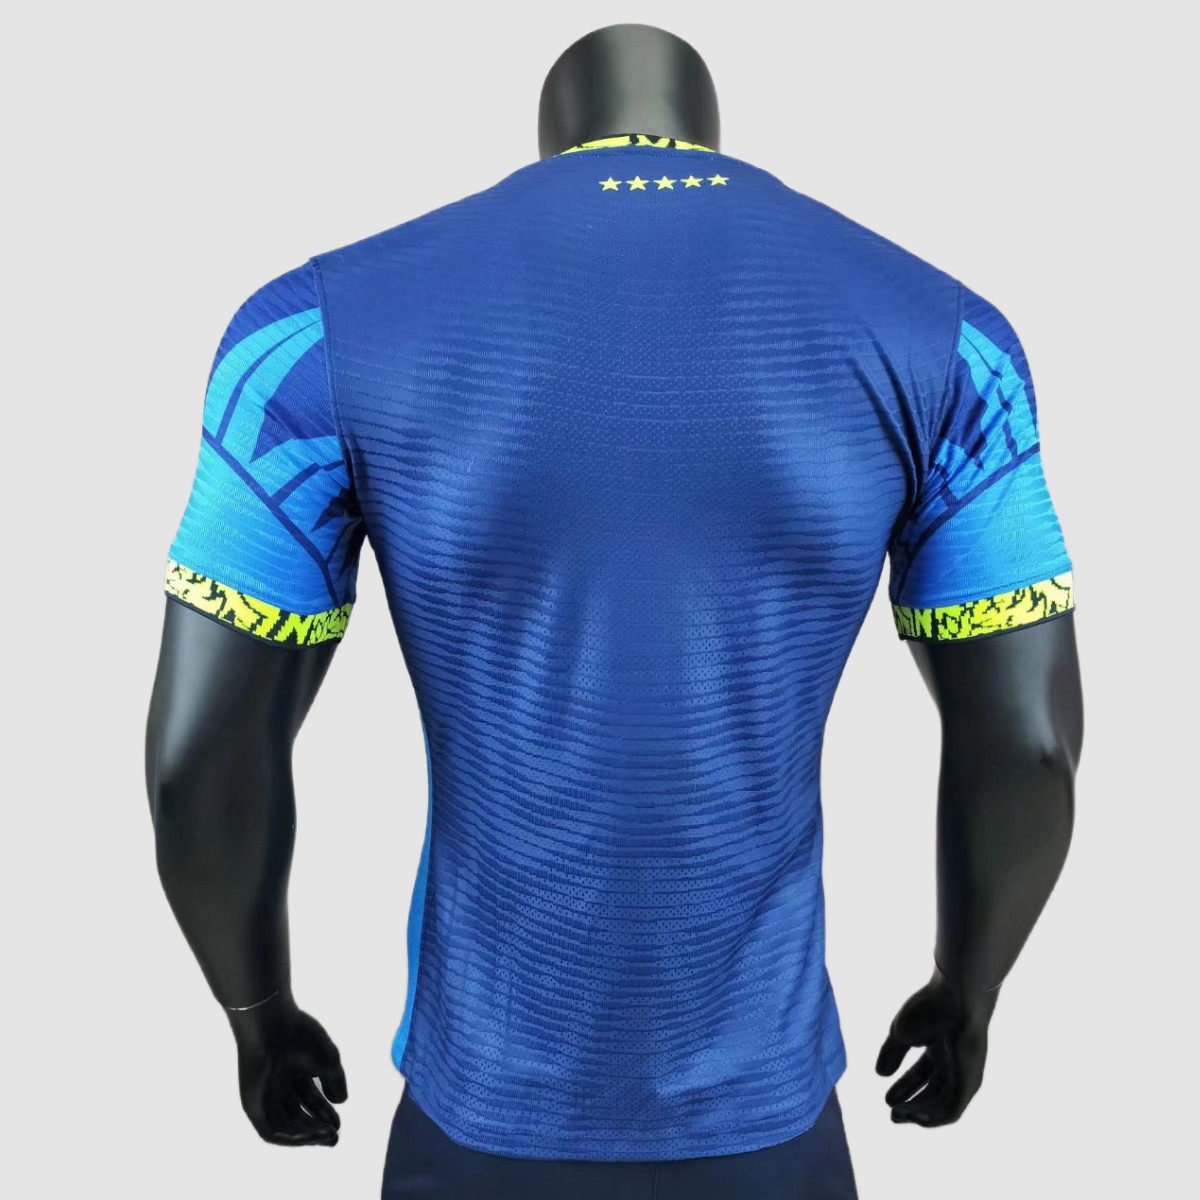 Player Version Brazil 2022 Special Jersey - Soccer Jerseys, Shirts ...